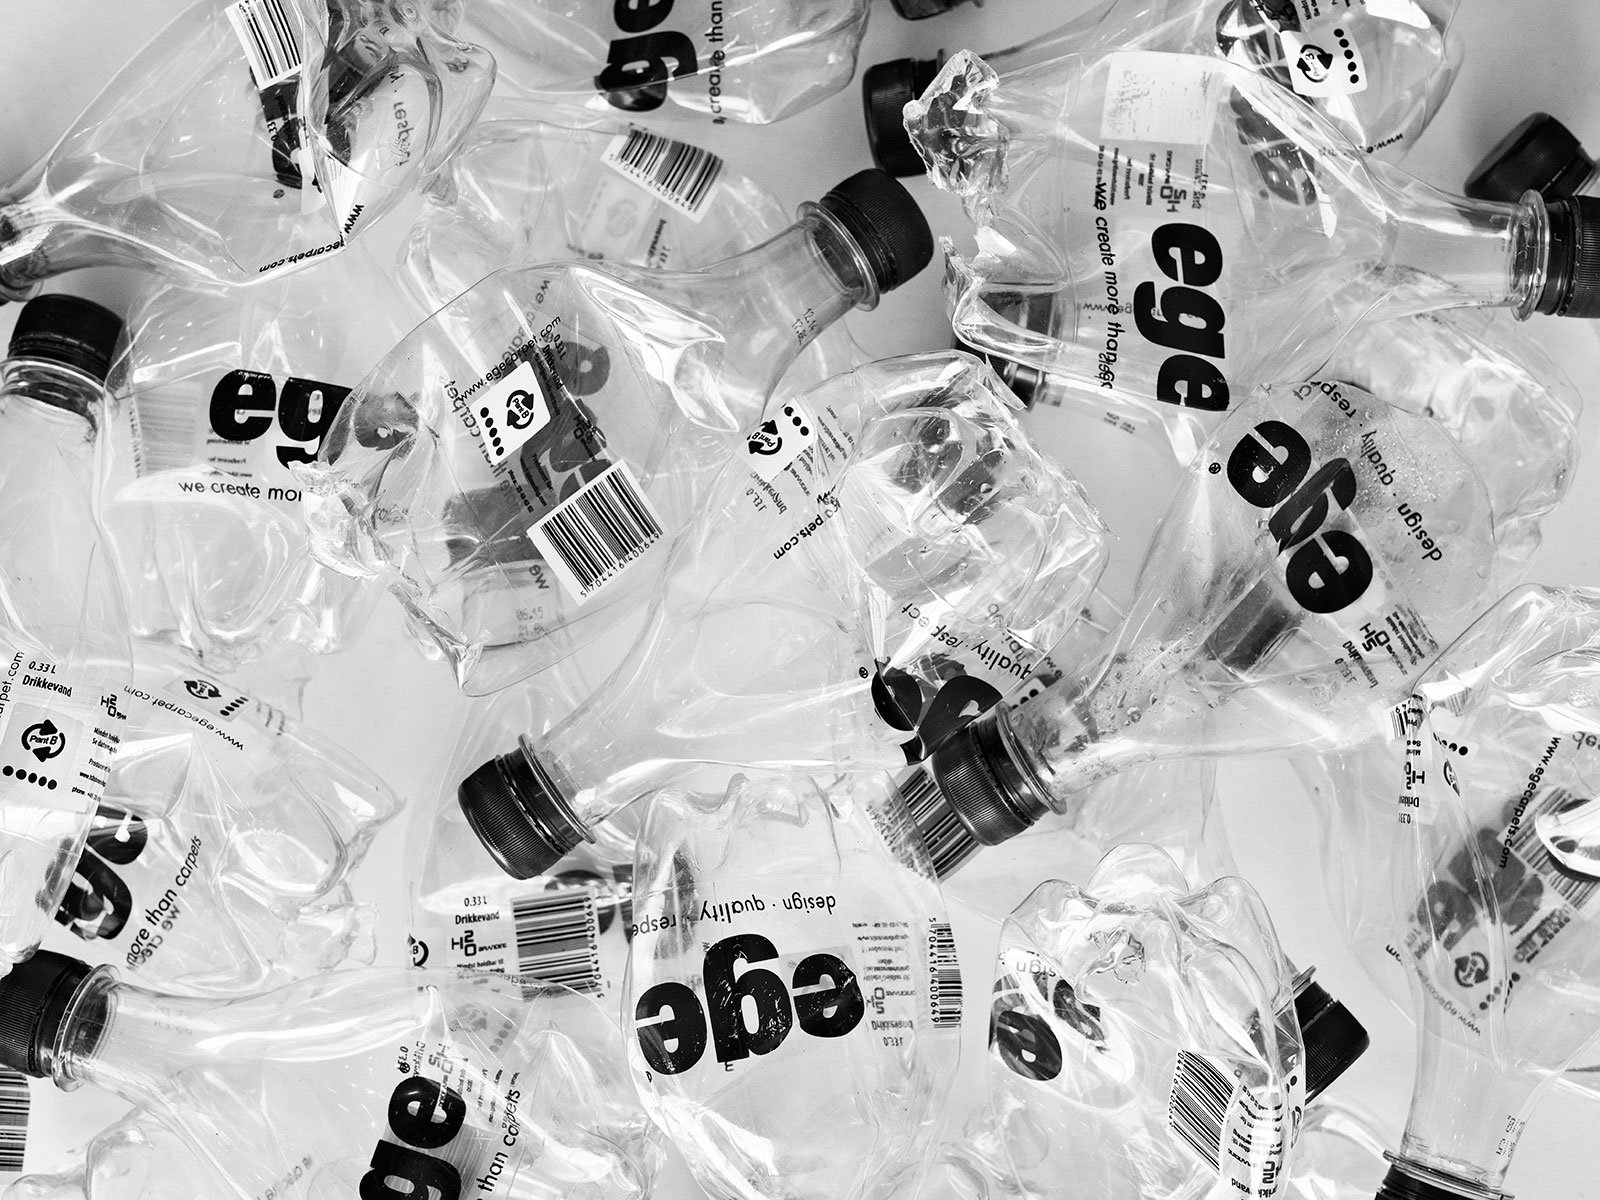 ReForm Ecotrust Teppich: Plastikflaschen recyclen